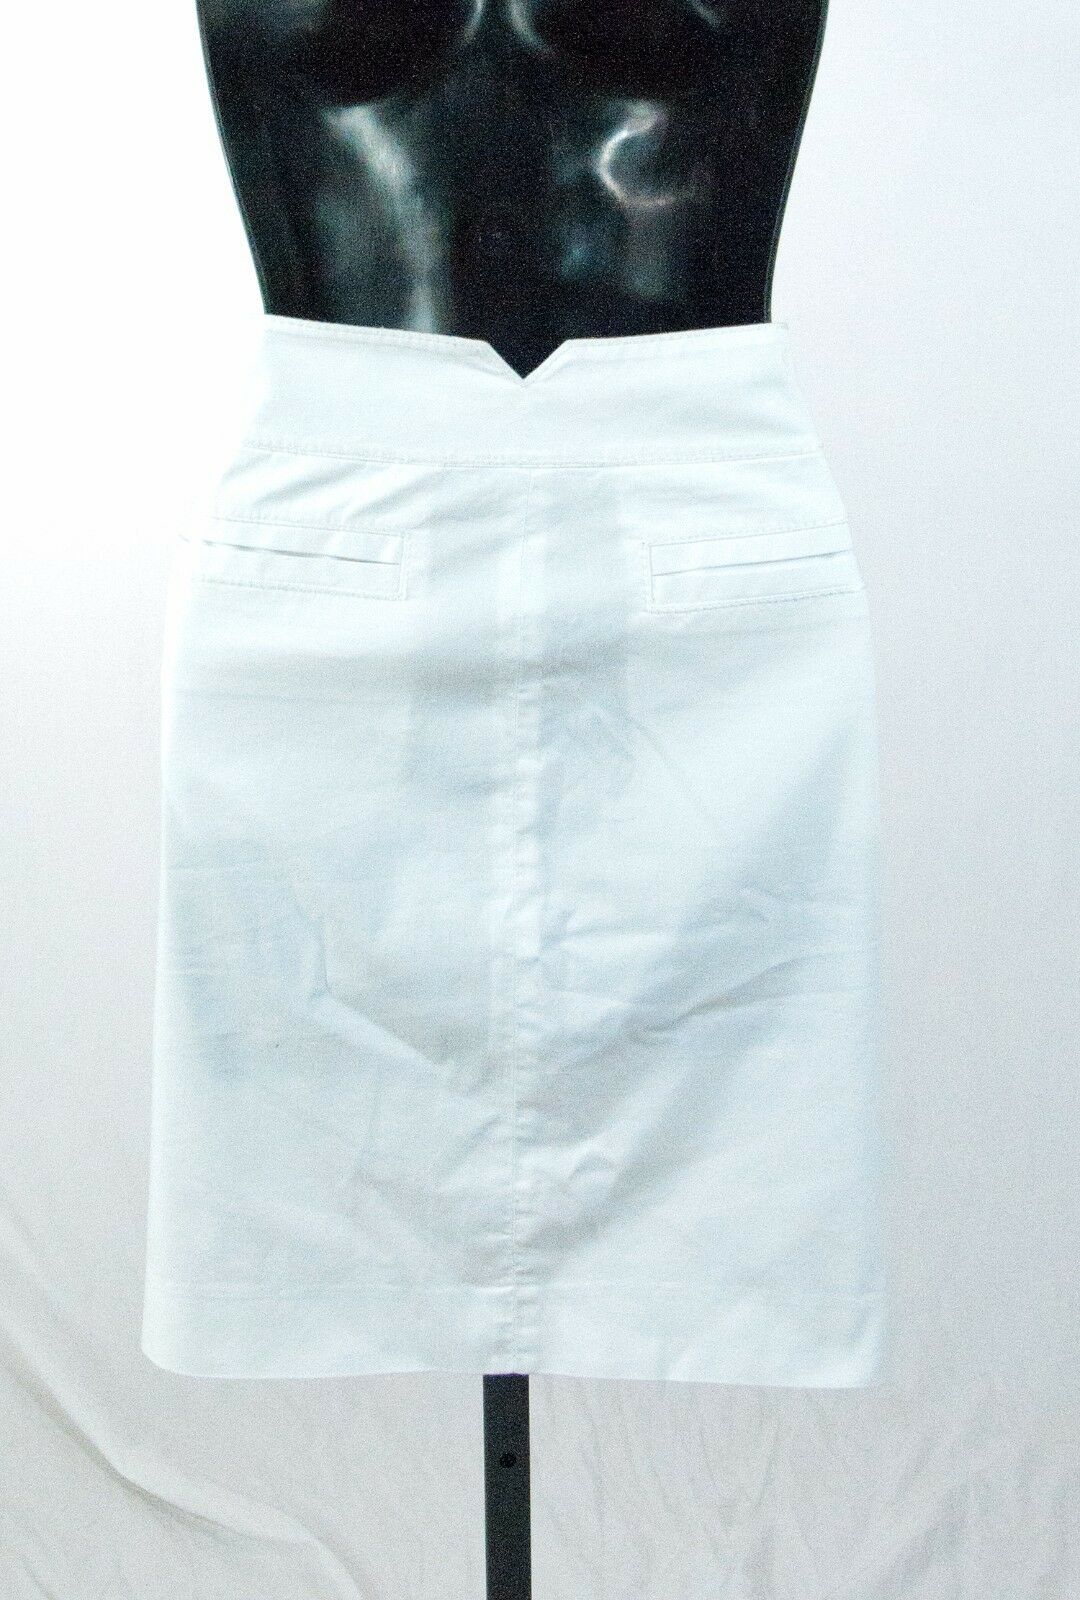 Diane Von Furstenberg White Denim Fitted Pencil Skirt Size 8 NWOT